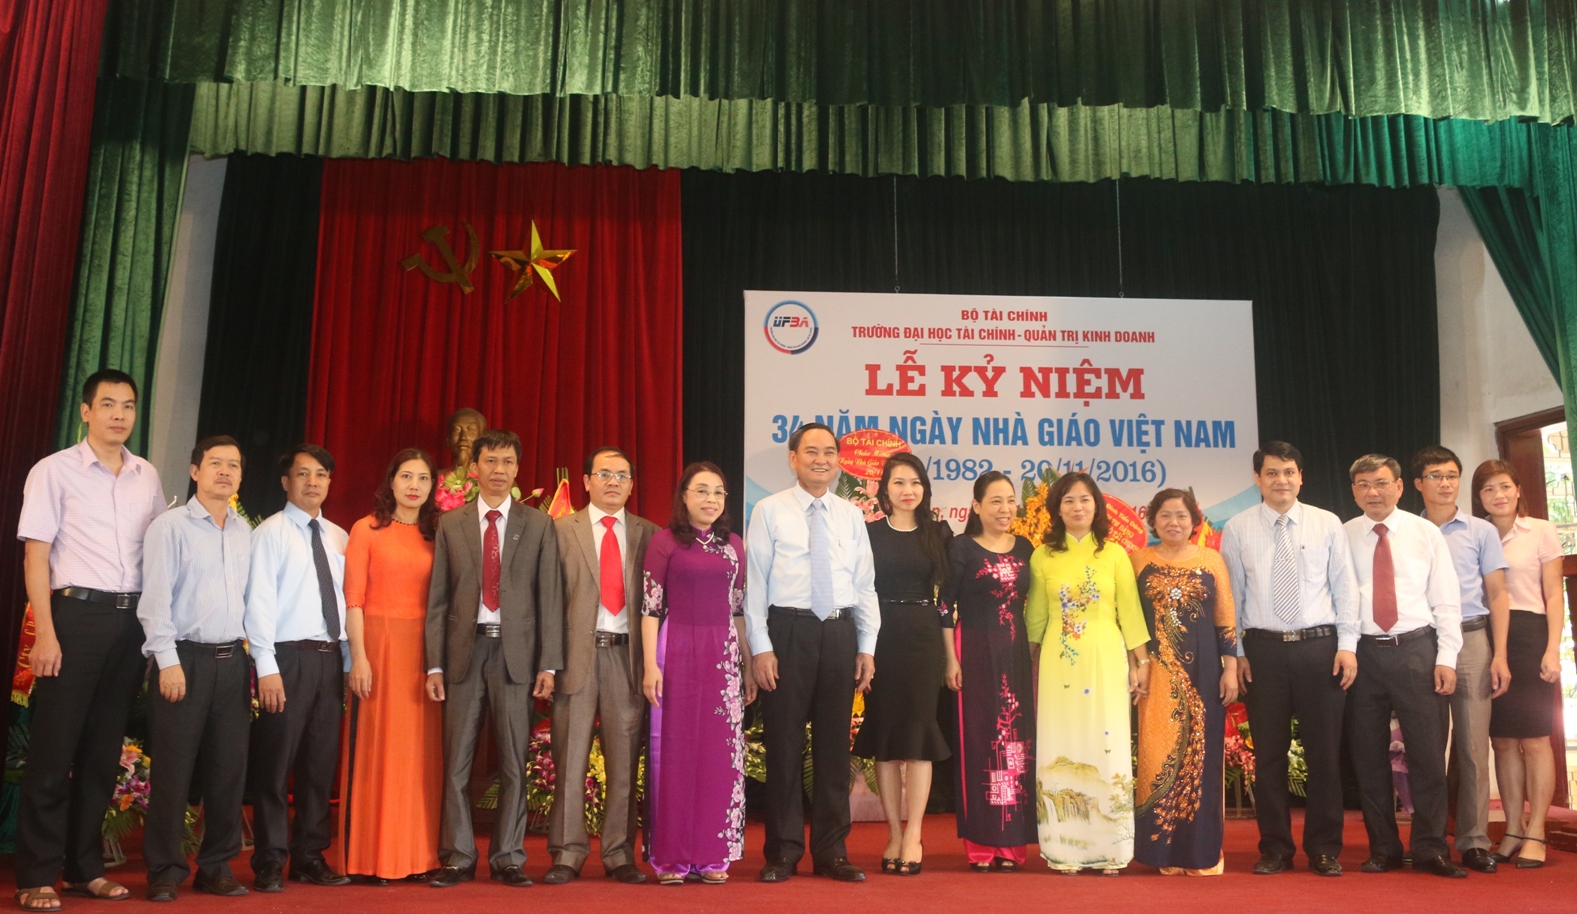 Đại học Tài chính - Quản trị kinh doanh tổ chức Lễ Kỷ niệm 34 năm ngày Nhà giáo Việt Nam 20/11/2016